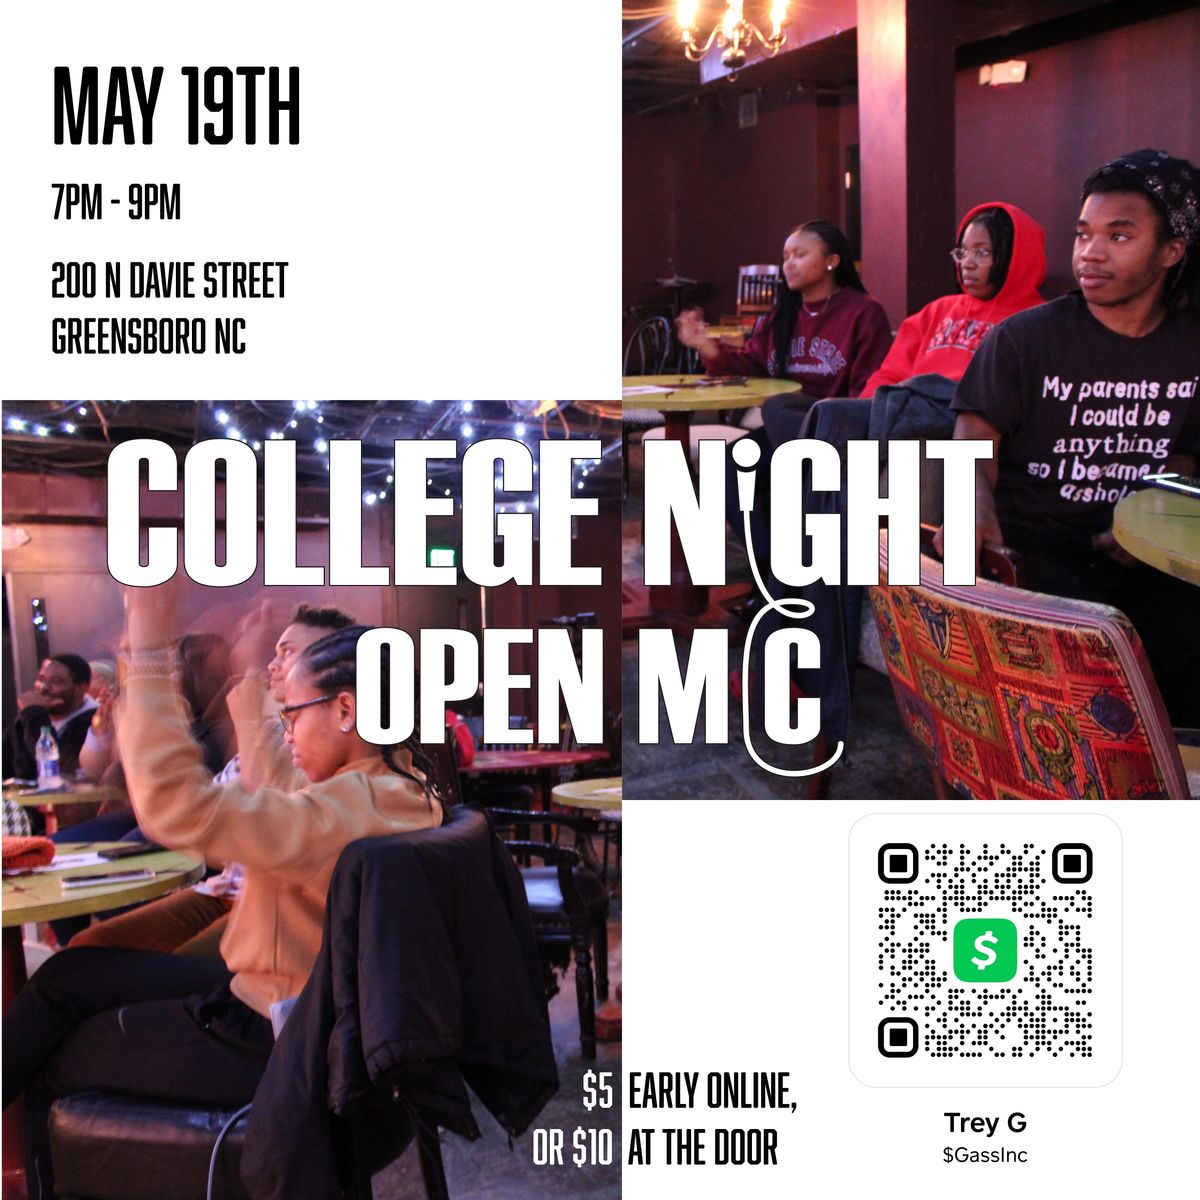 College Night Open Mic Greensboro Cultural Center/Center for Visual